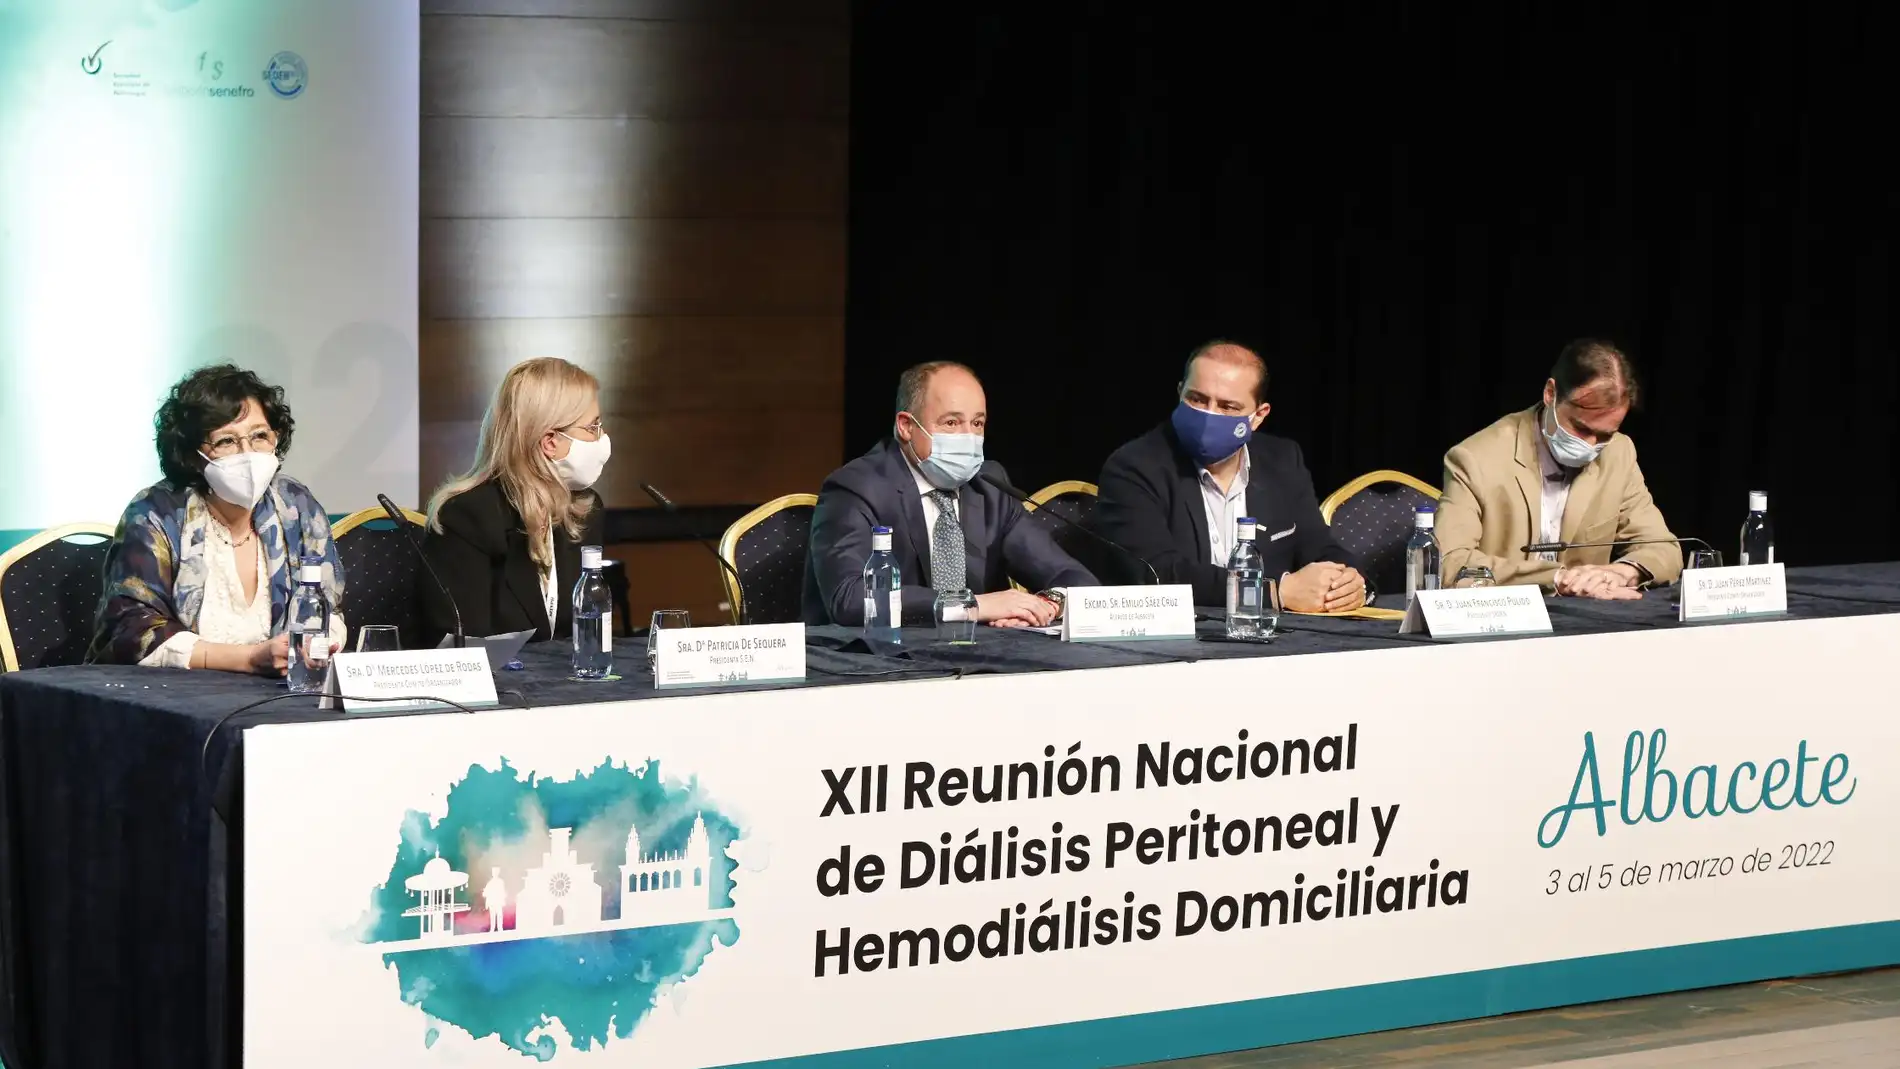 XII Reunión Nacional de Diálisis Peritoneal y Hemodiálisis Domiciliaria